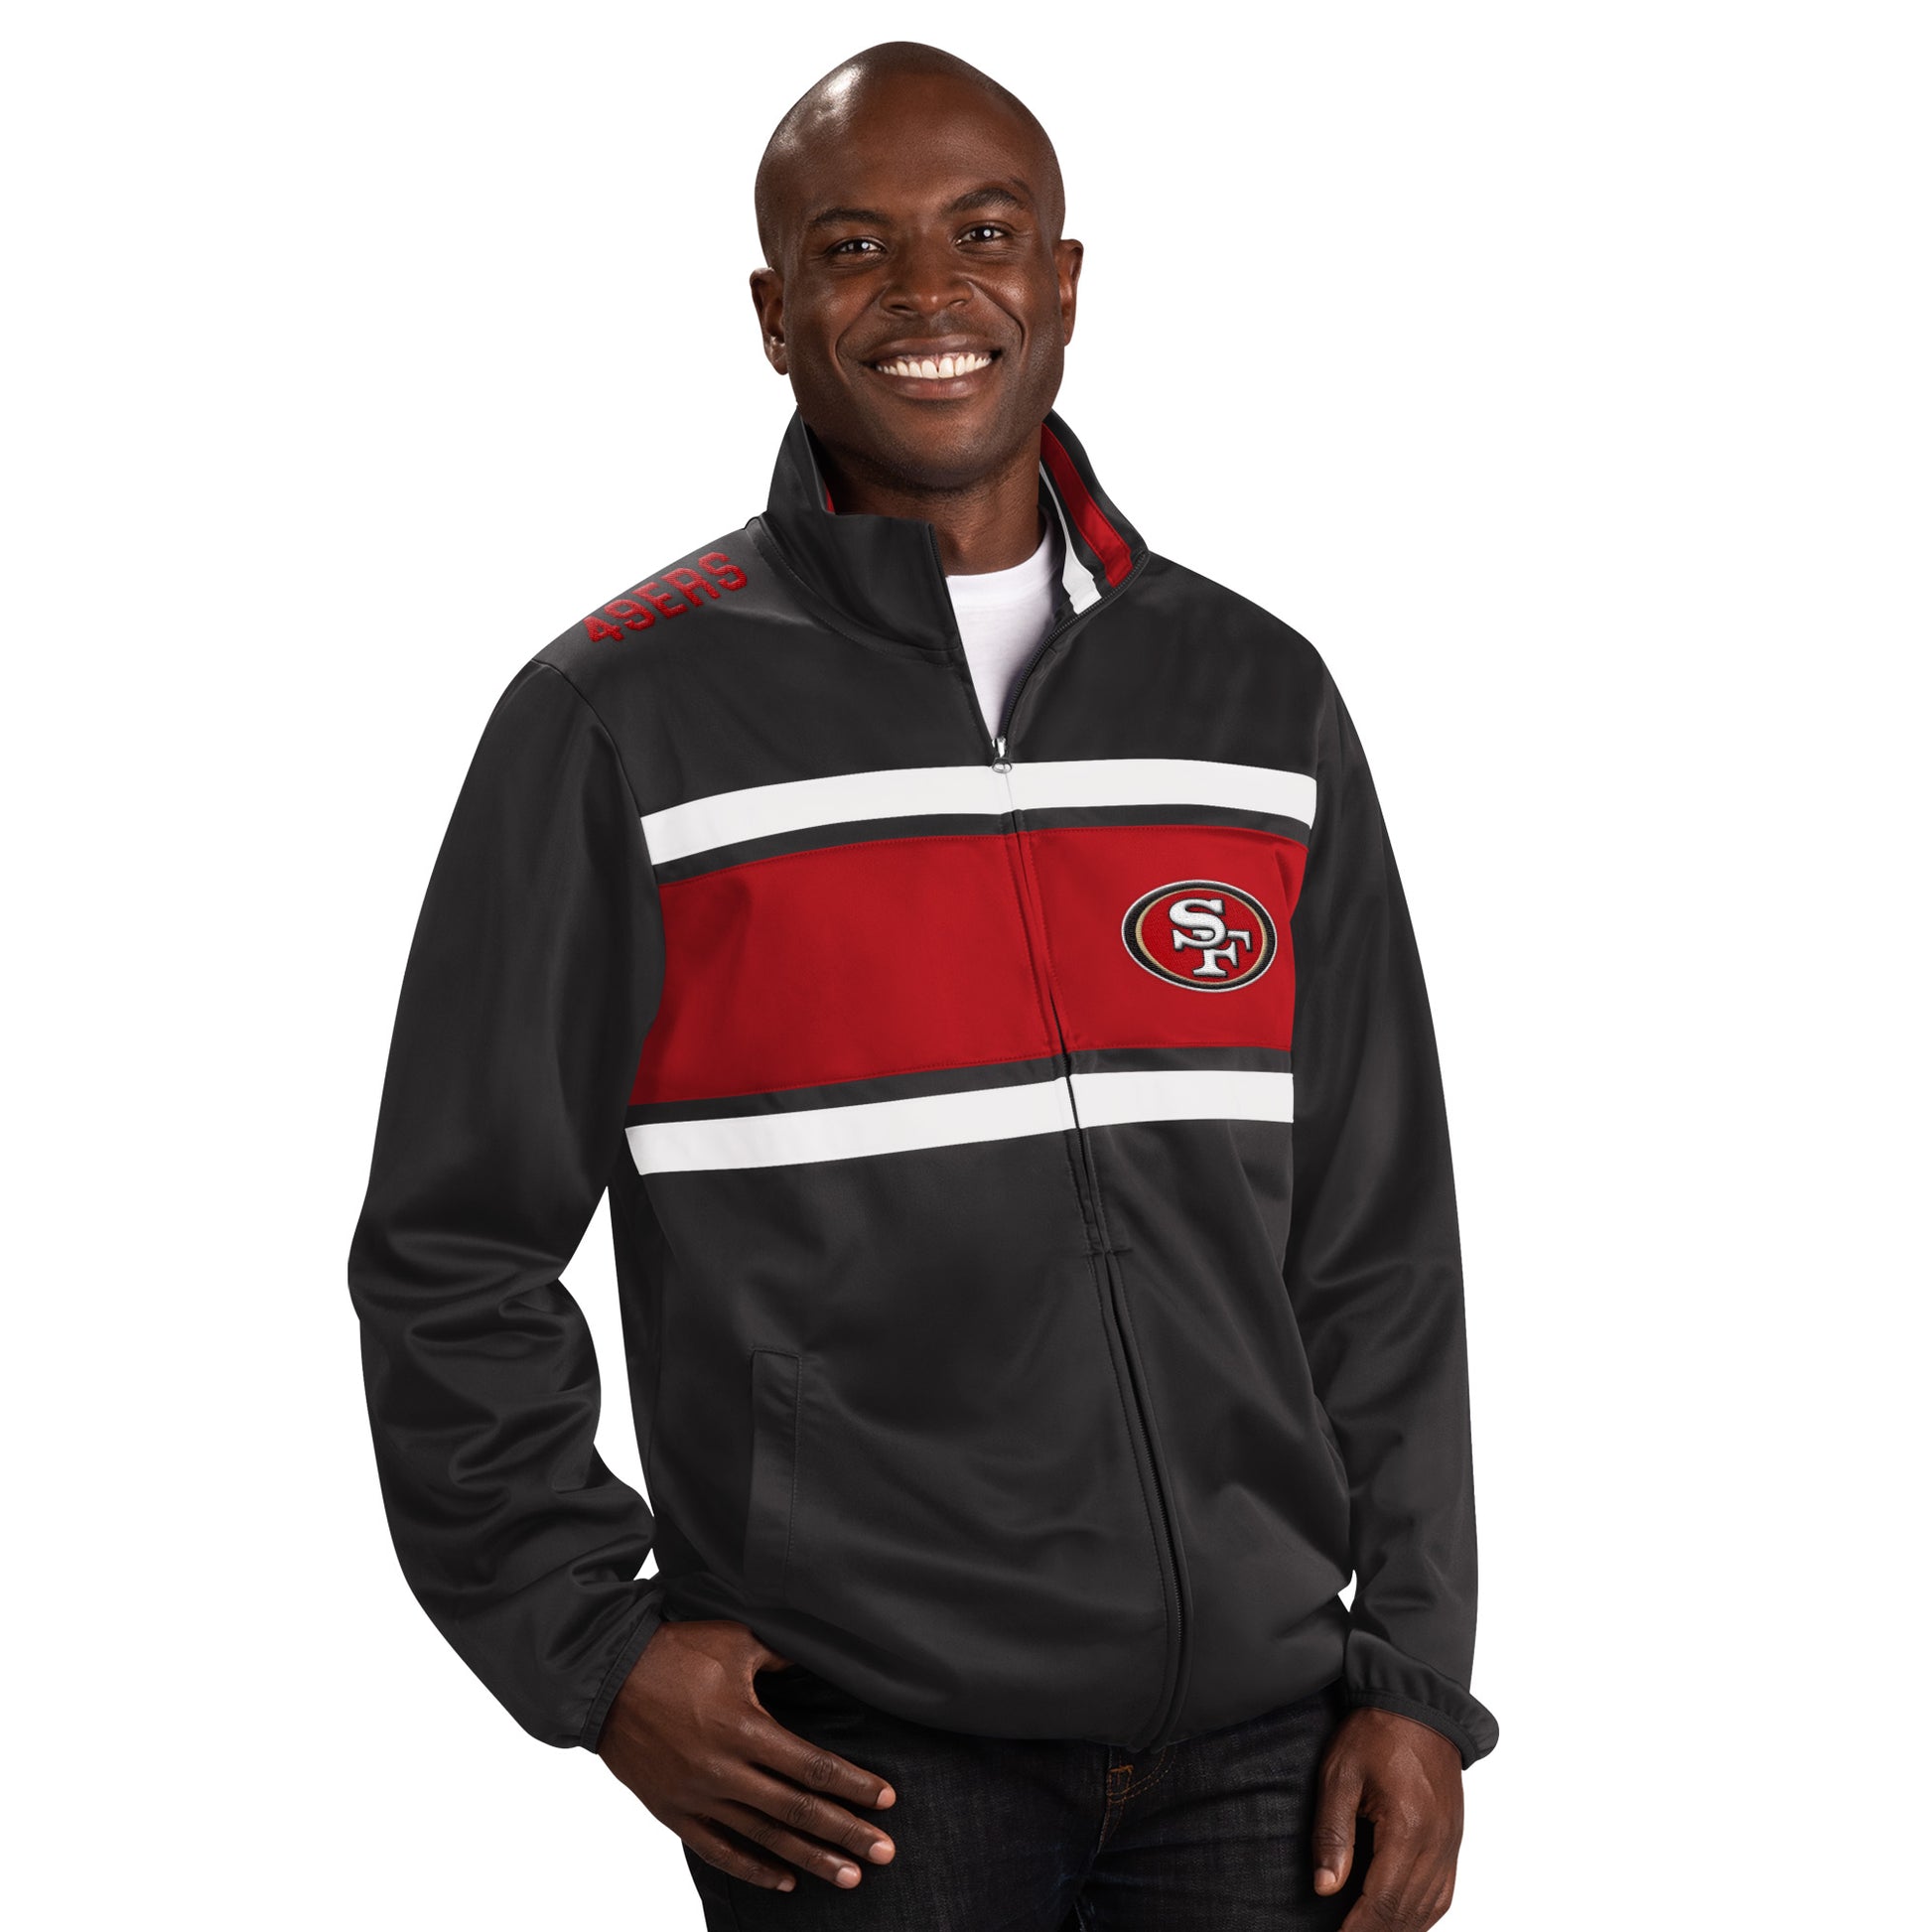 francisco 49ers jacket